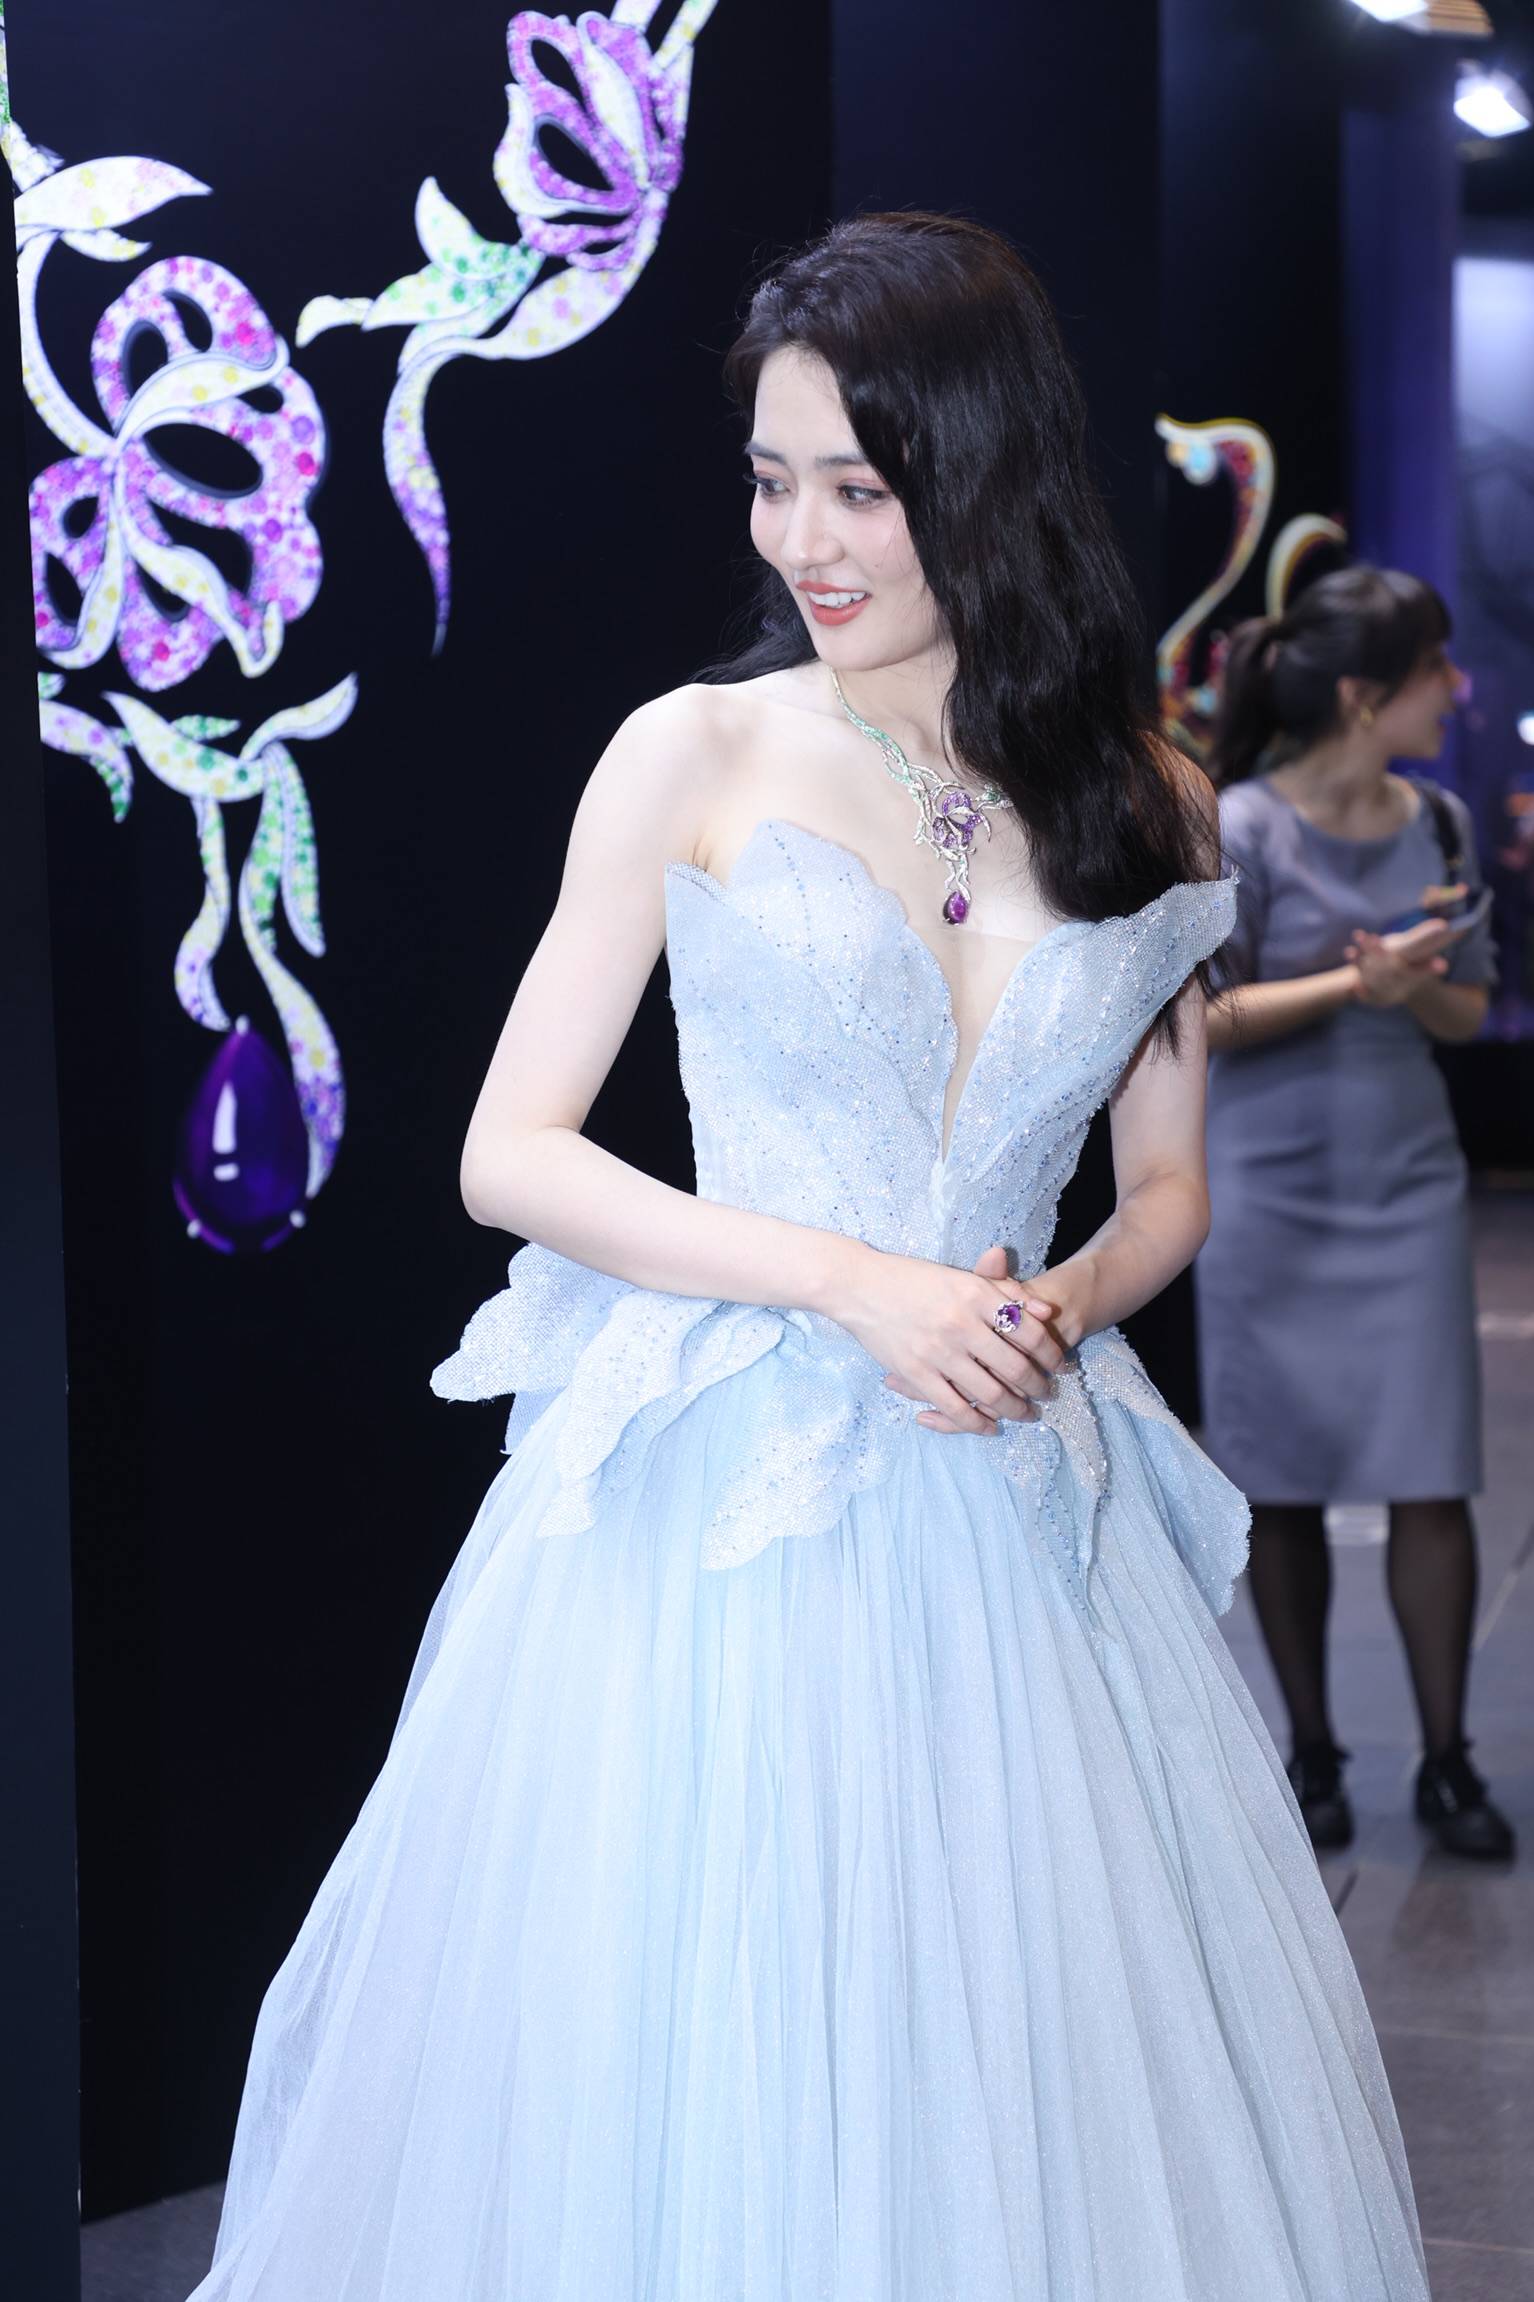 1/ 12 2021年8月20日,上海,徐璐出席tesoro意大利高级珠宝开幕仪式,她